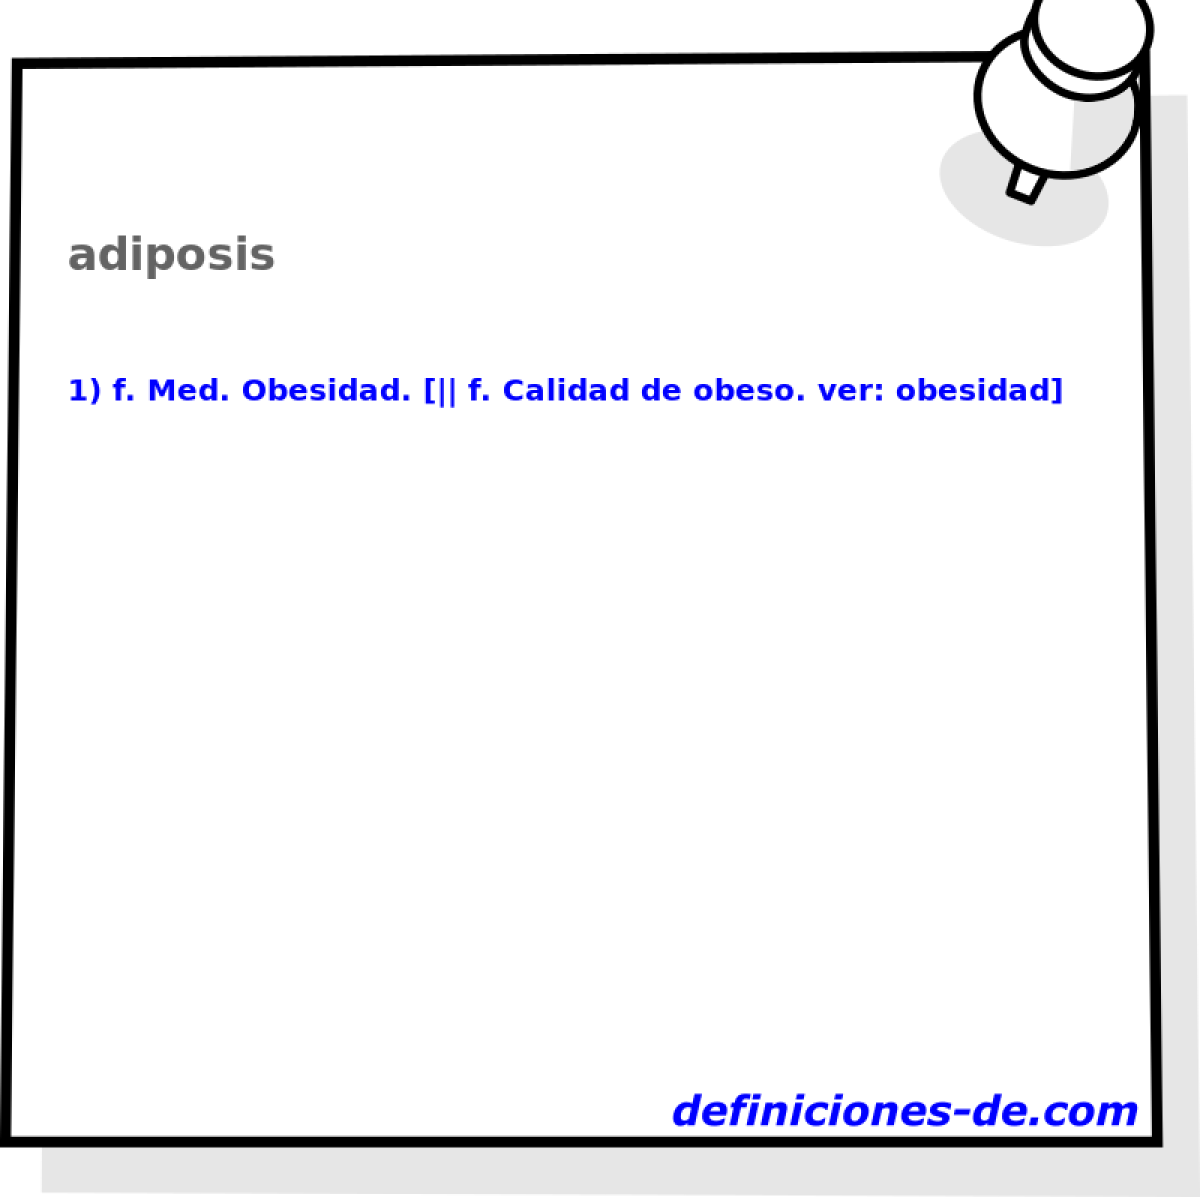 adiposis 